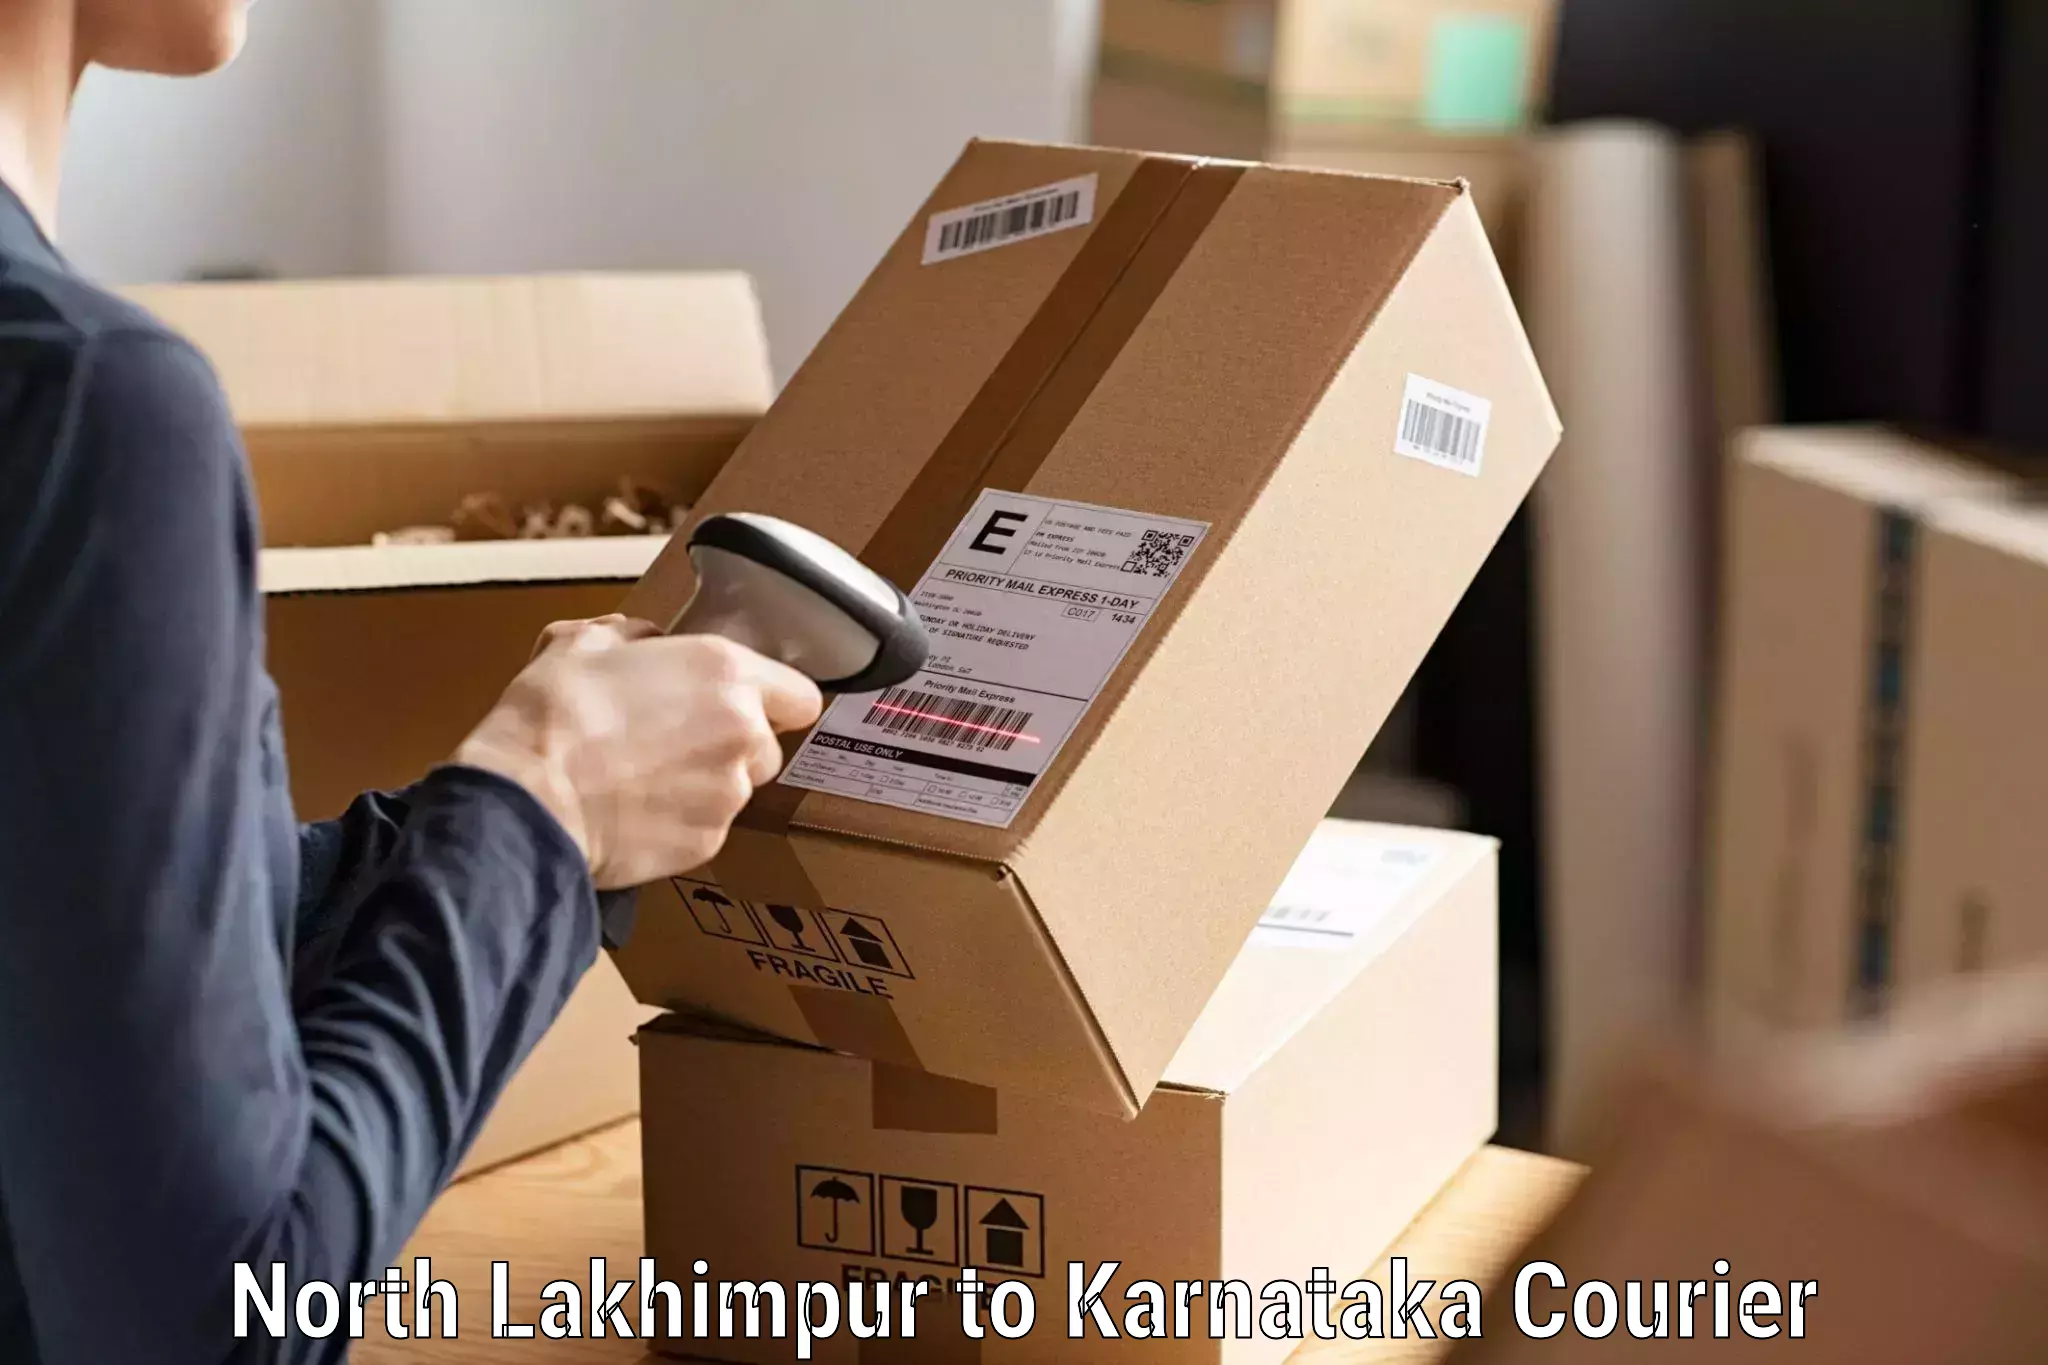 Digital courier platforms North Lakhimpur to Bhalki